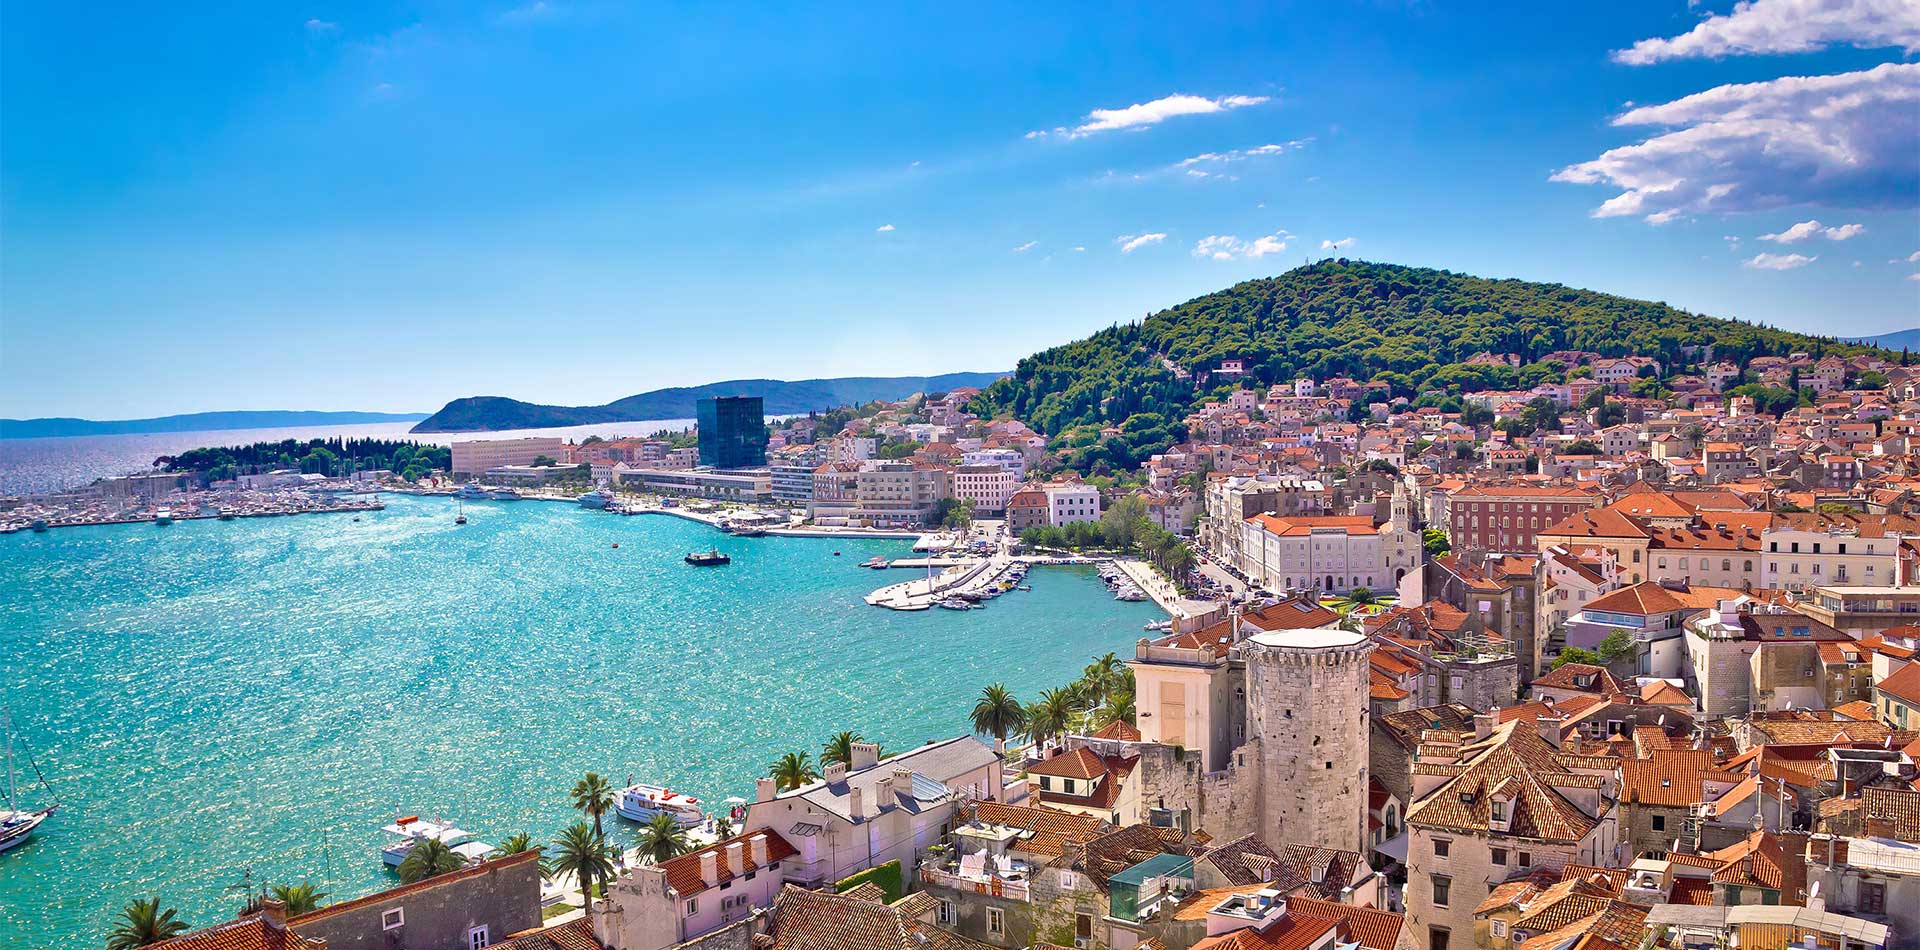 Waterfront in Split, Croatia